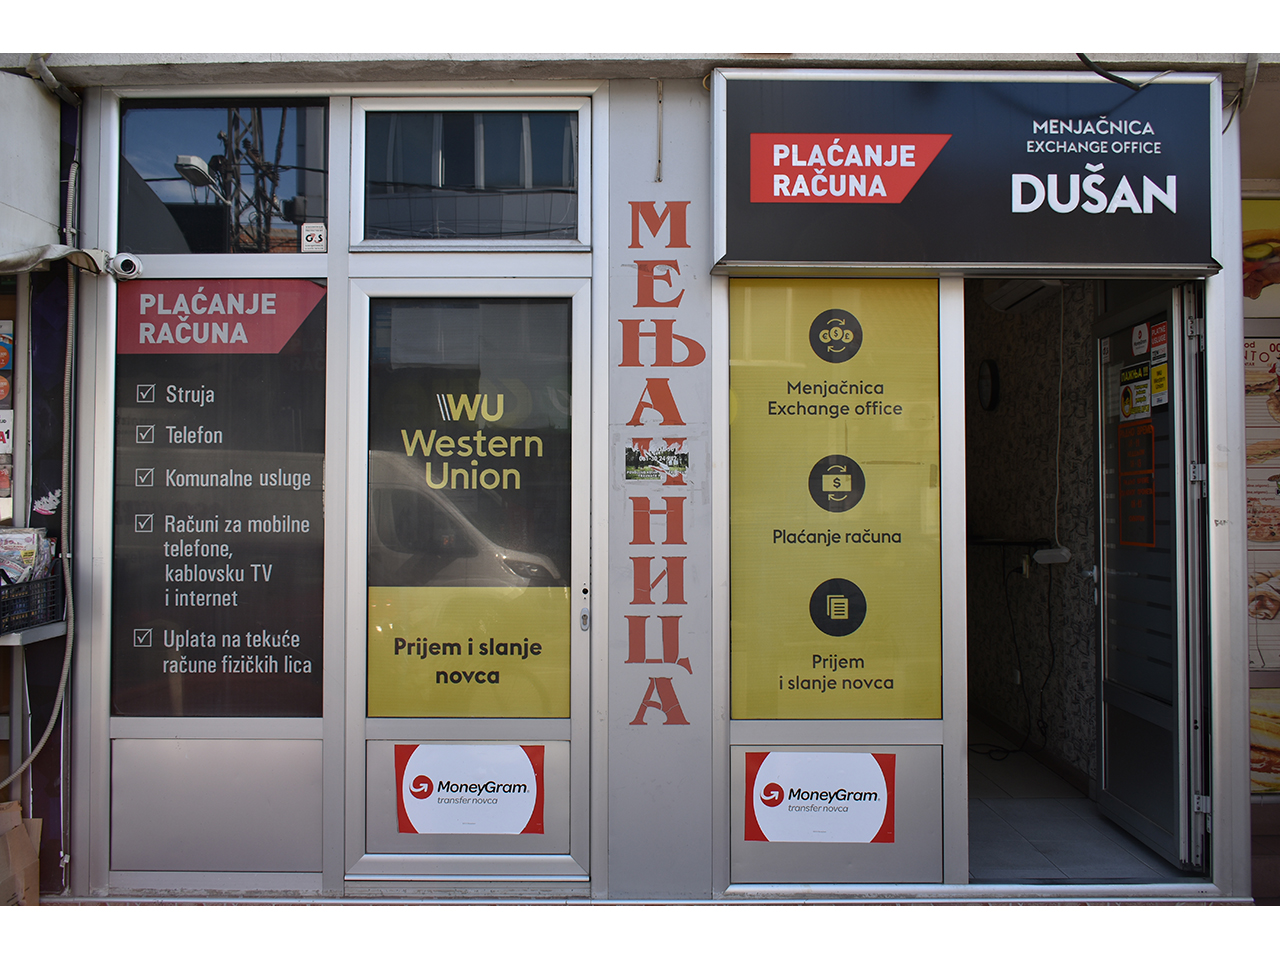 Photo 3 - DUSAN EXCHANGE OFFICE Exchange office Belgrade